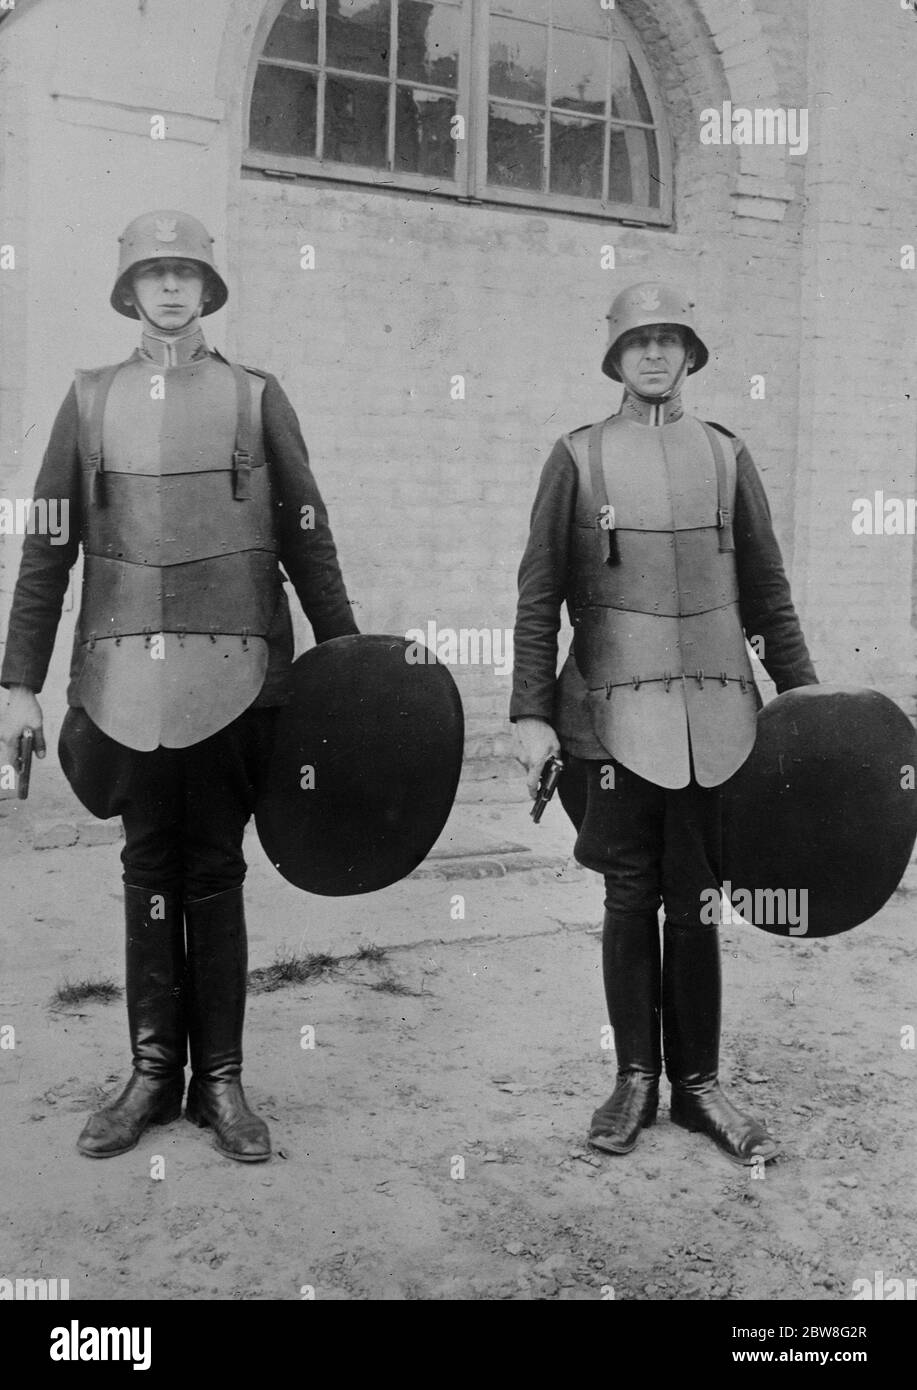 No caballeros medievales, sino policías polacos modernos. 25 de noviembre de 1930 Foto de stock